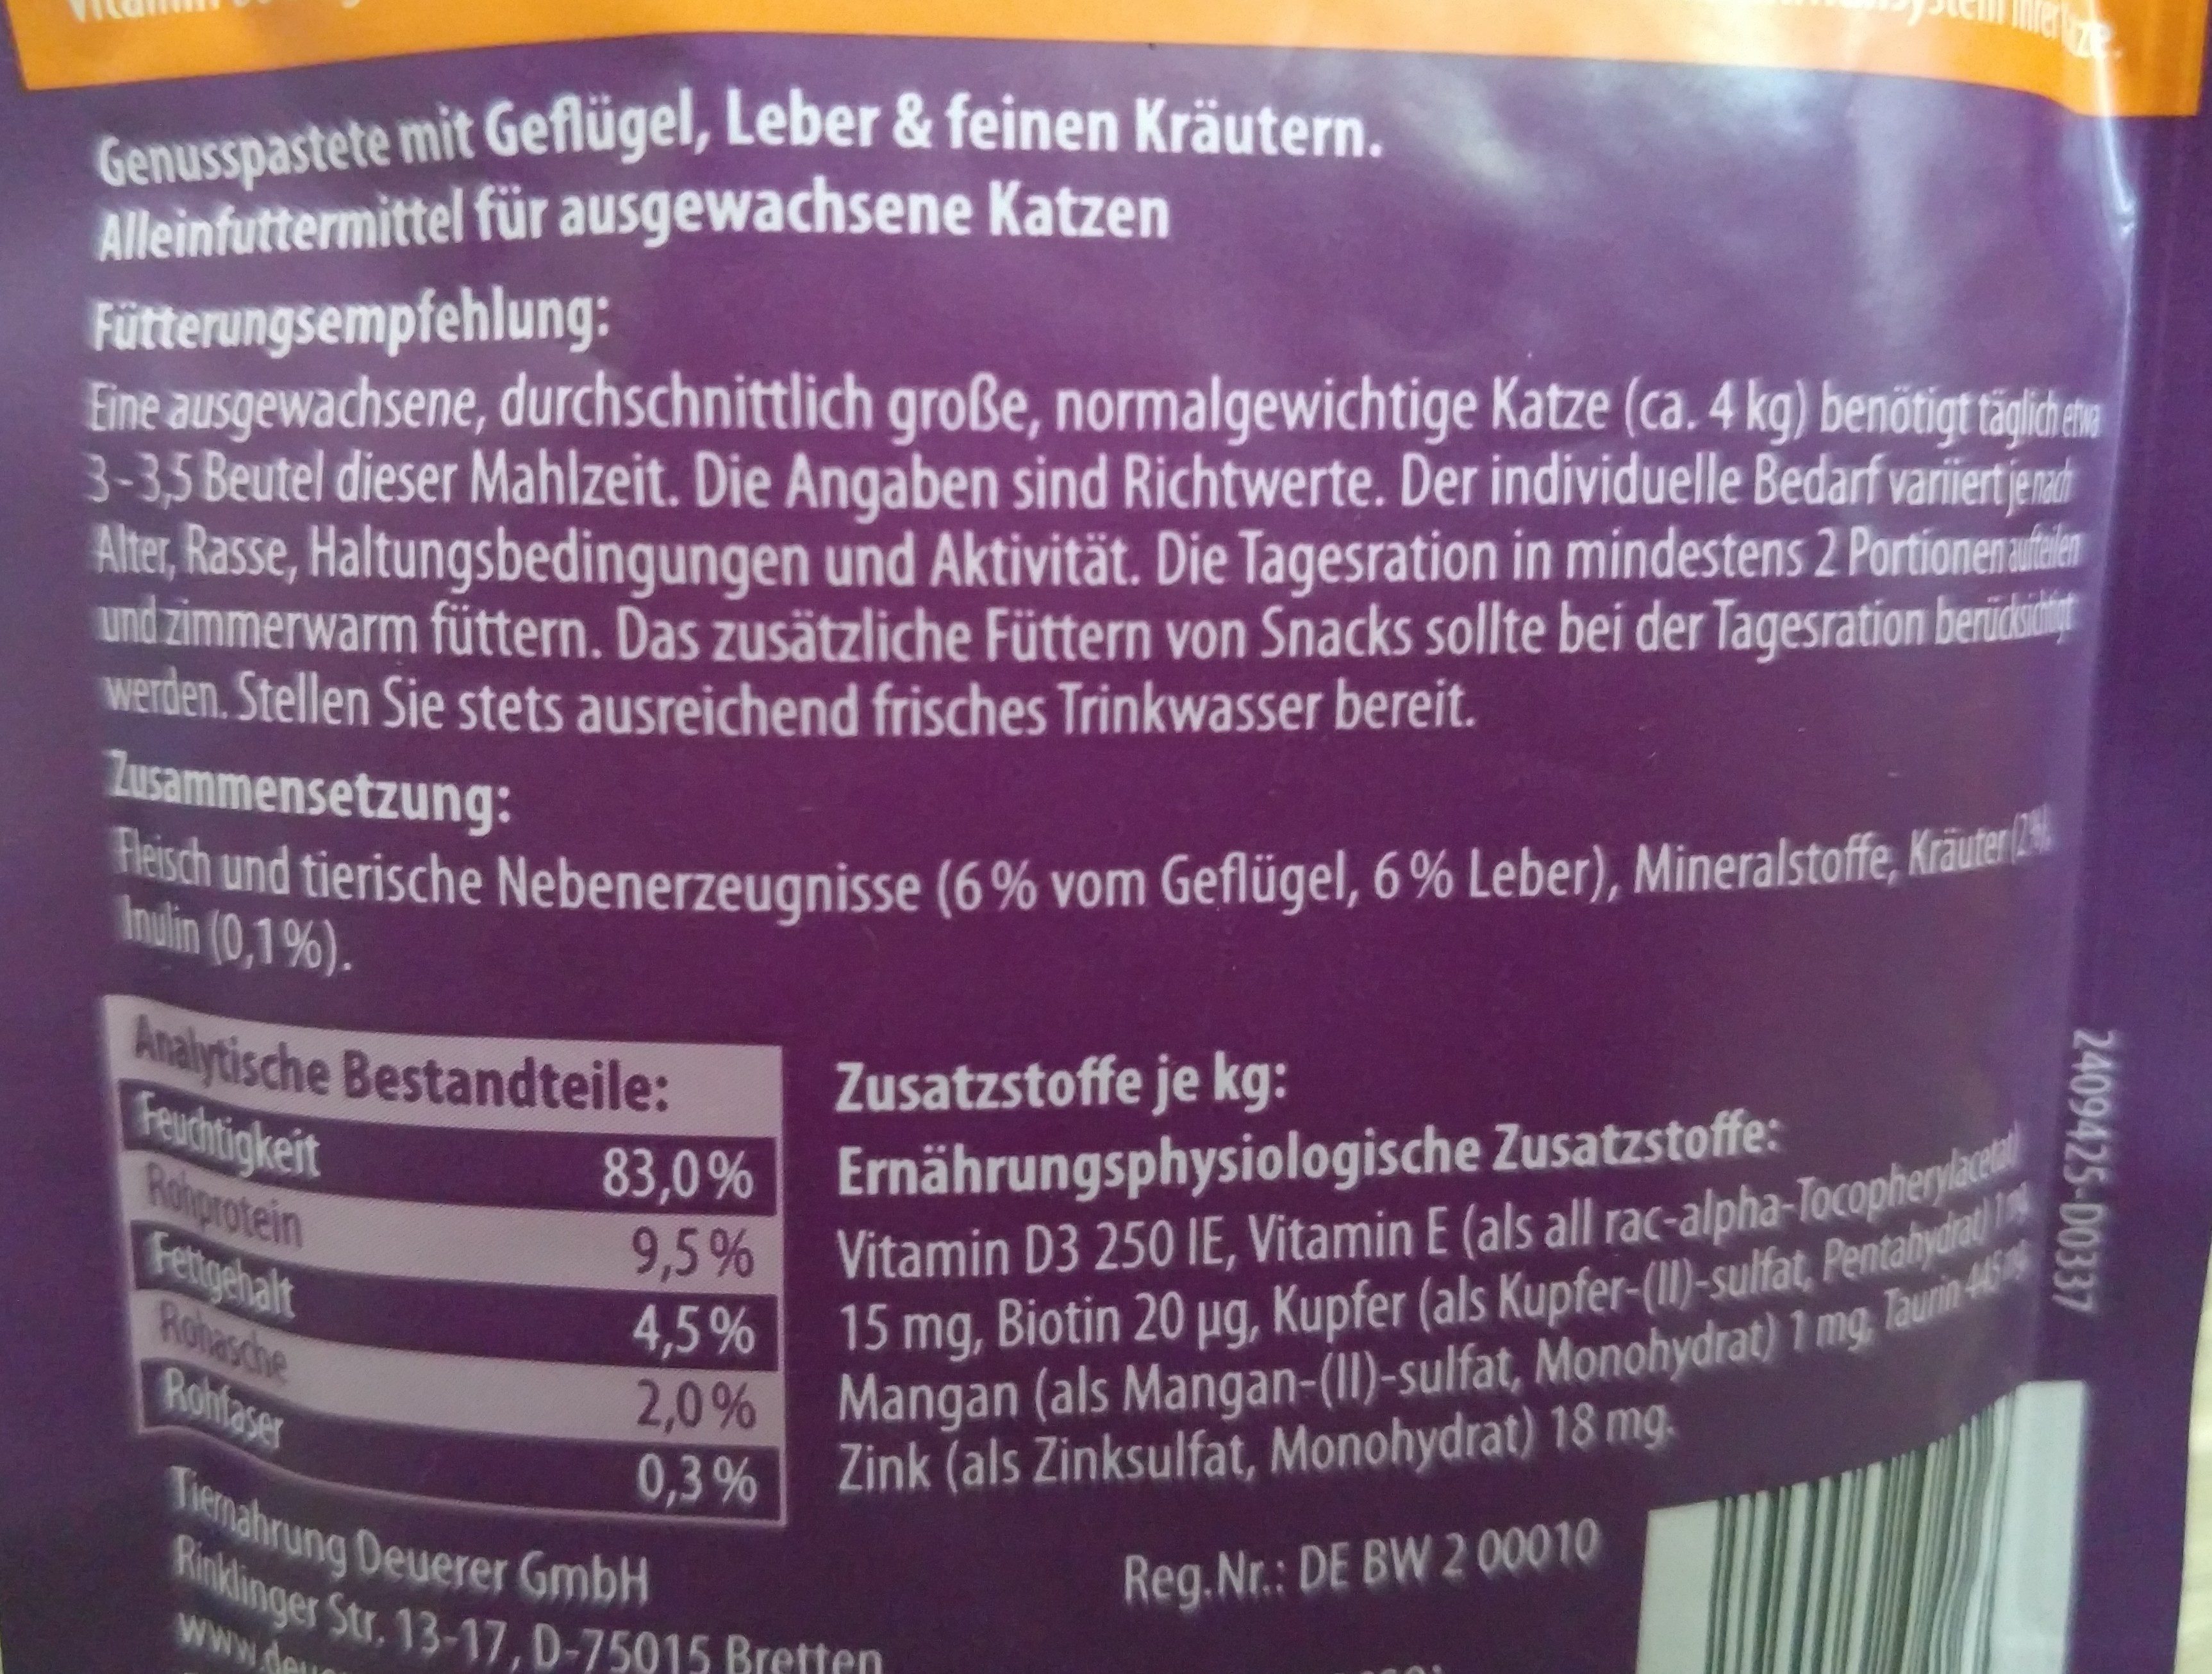 Genusspastete mit Geflügel, Leber & feinen Kräutern - Ingredients - de